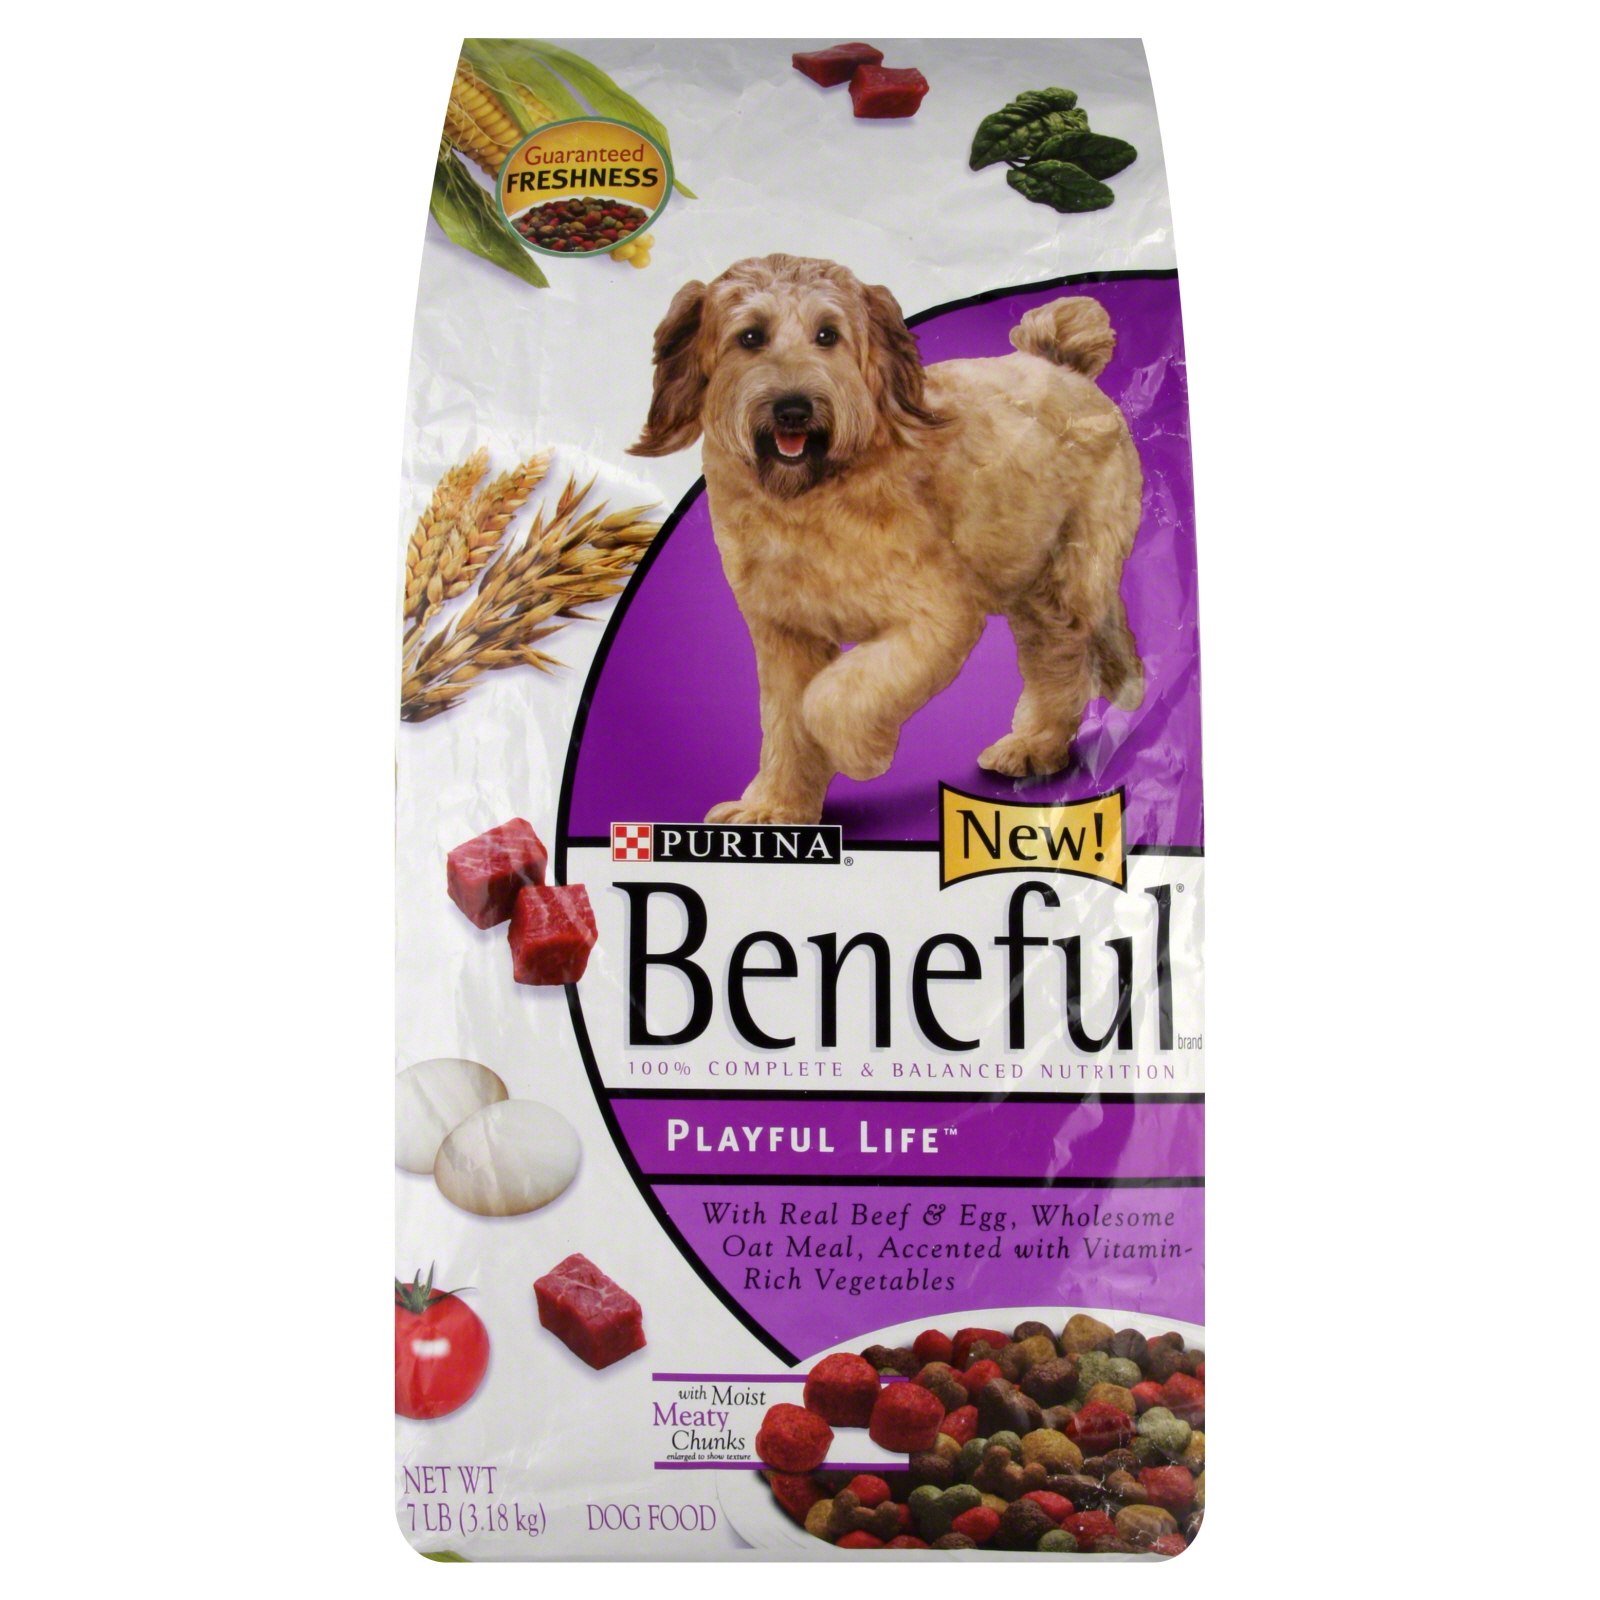 Beneful Playful Life Dog Food Dry, 7 lbs